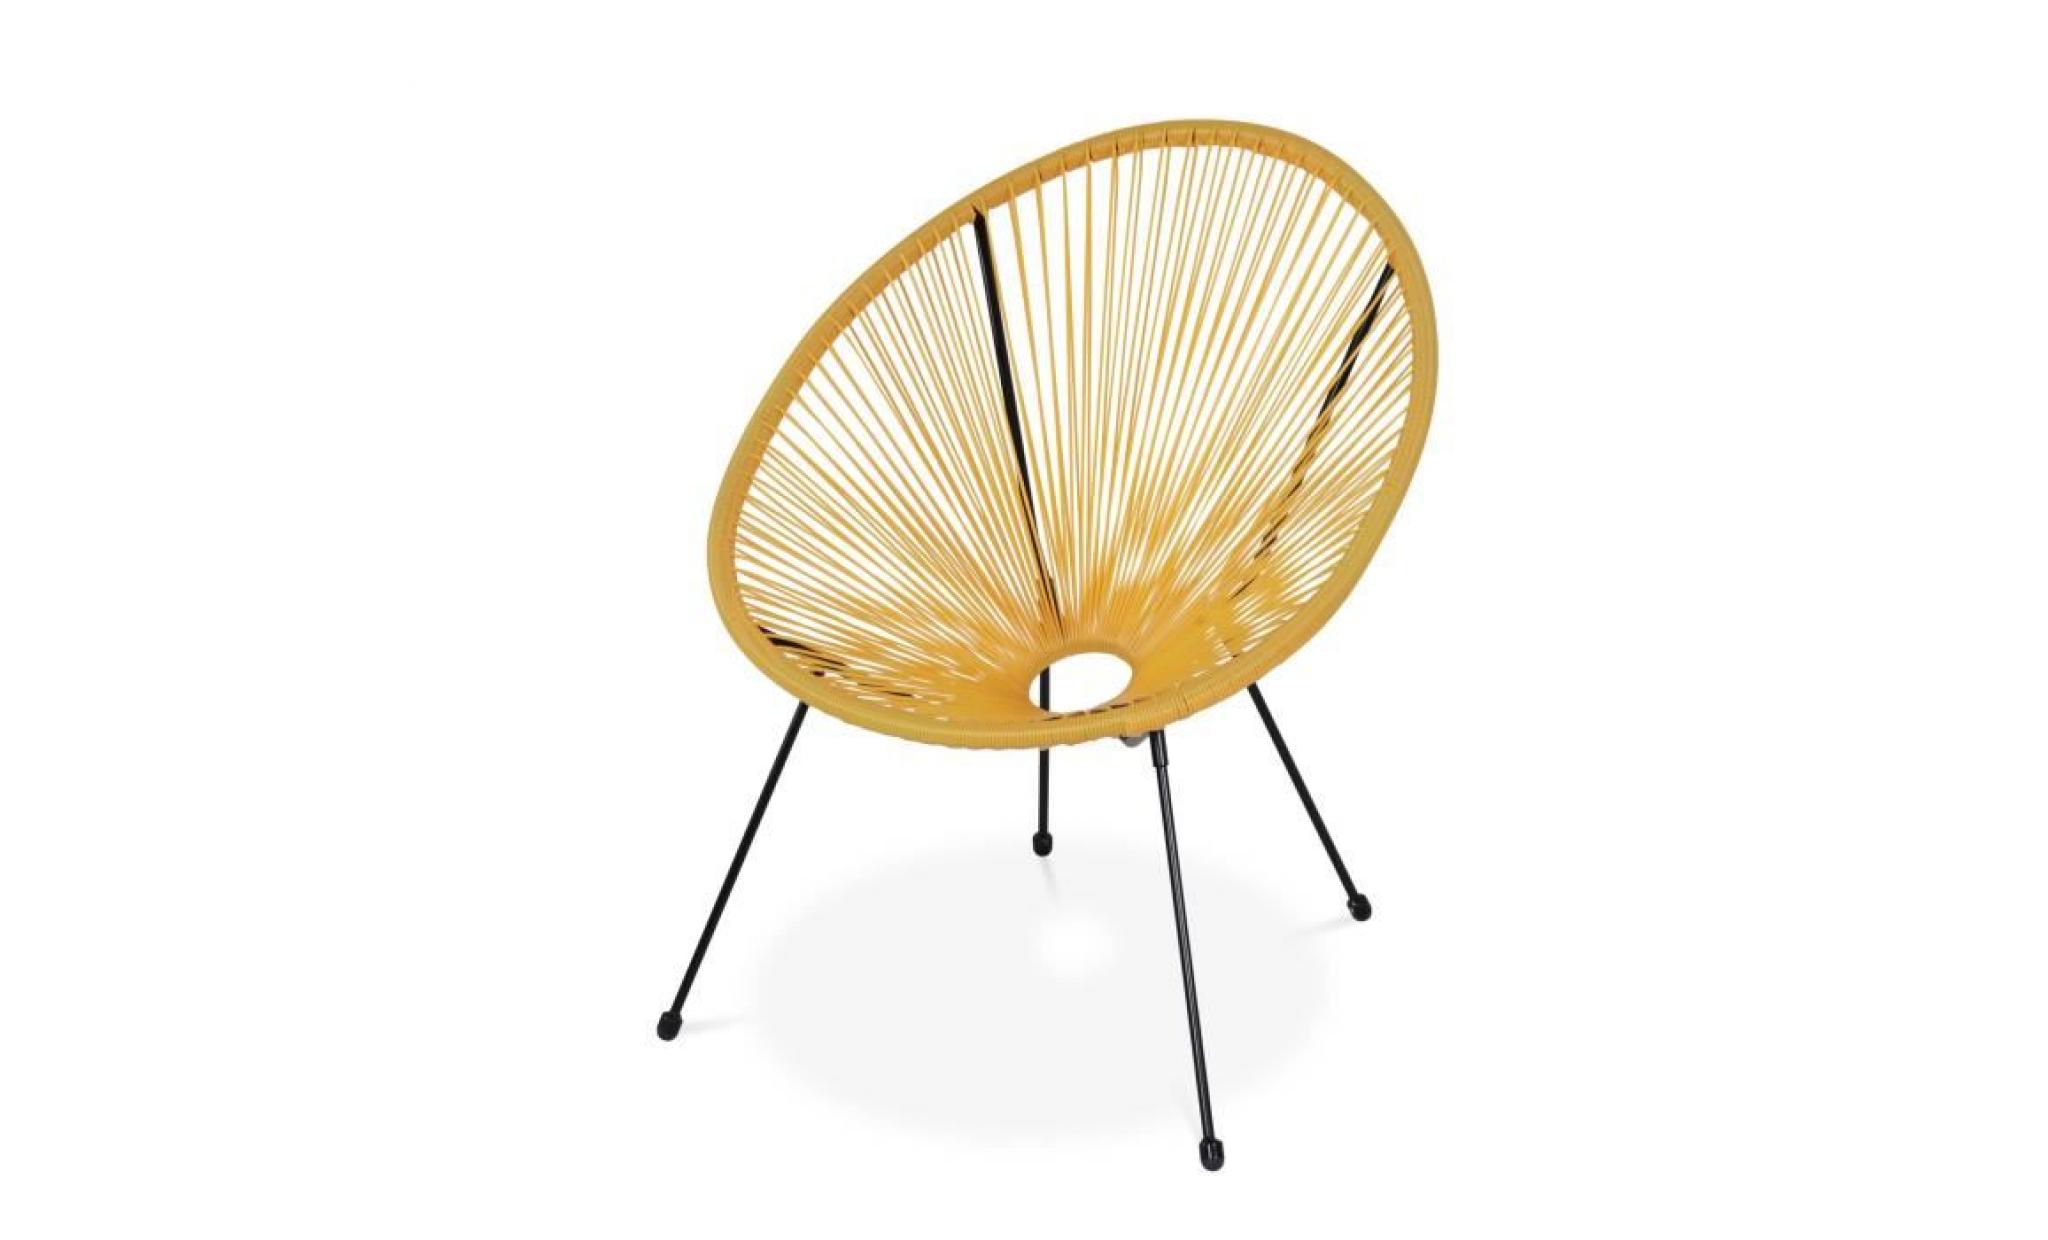 fauteuil acapulco forme d'oeuf   jaune   fauteuil 4 pieds design rétro, cordage plastique, intérieur / extérieur